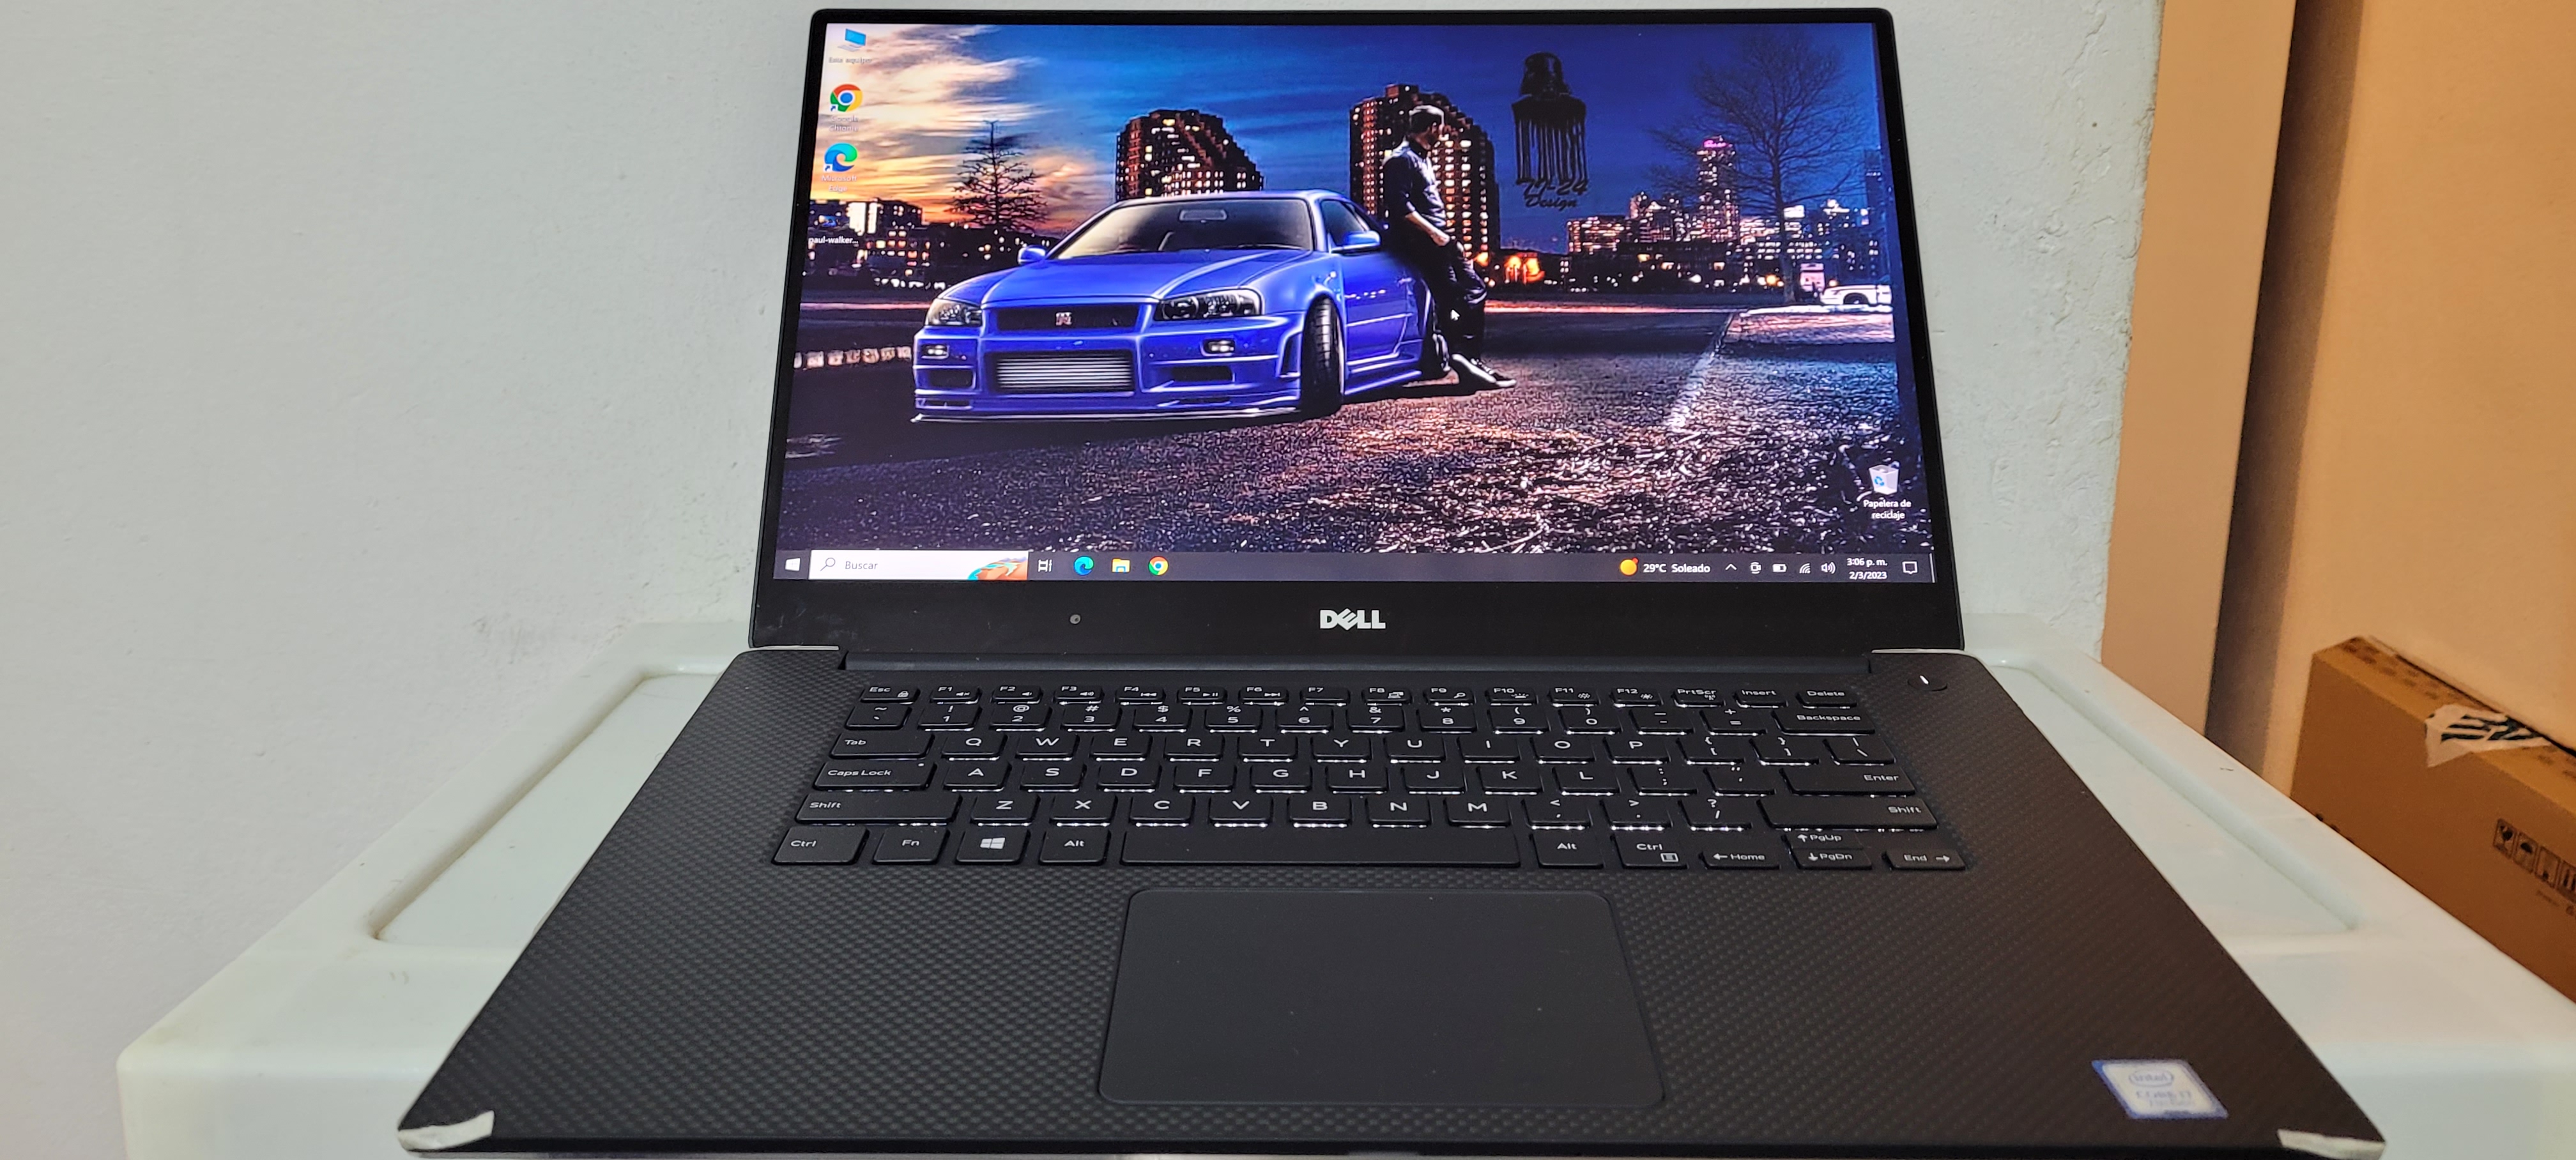 computadoras y laptops - Laptop Dell xps 15 Pulg Core i7 7ma Gen Ram 16gb DDR4 Nvidea Gtx 1050 4gb New 0